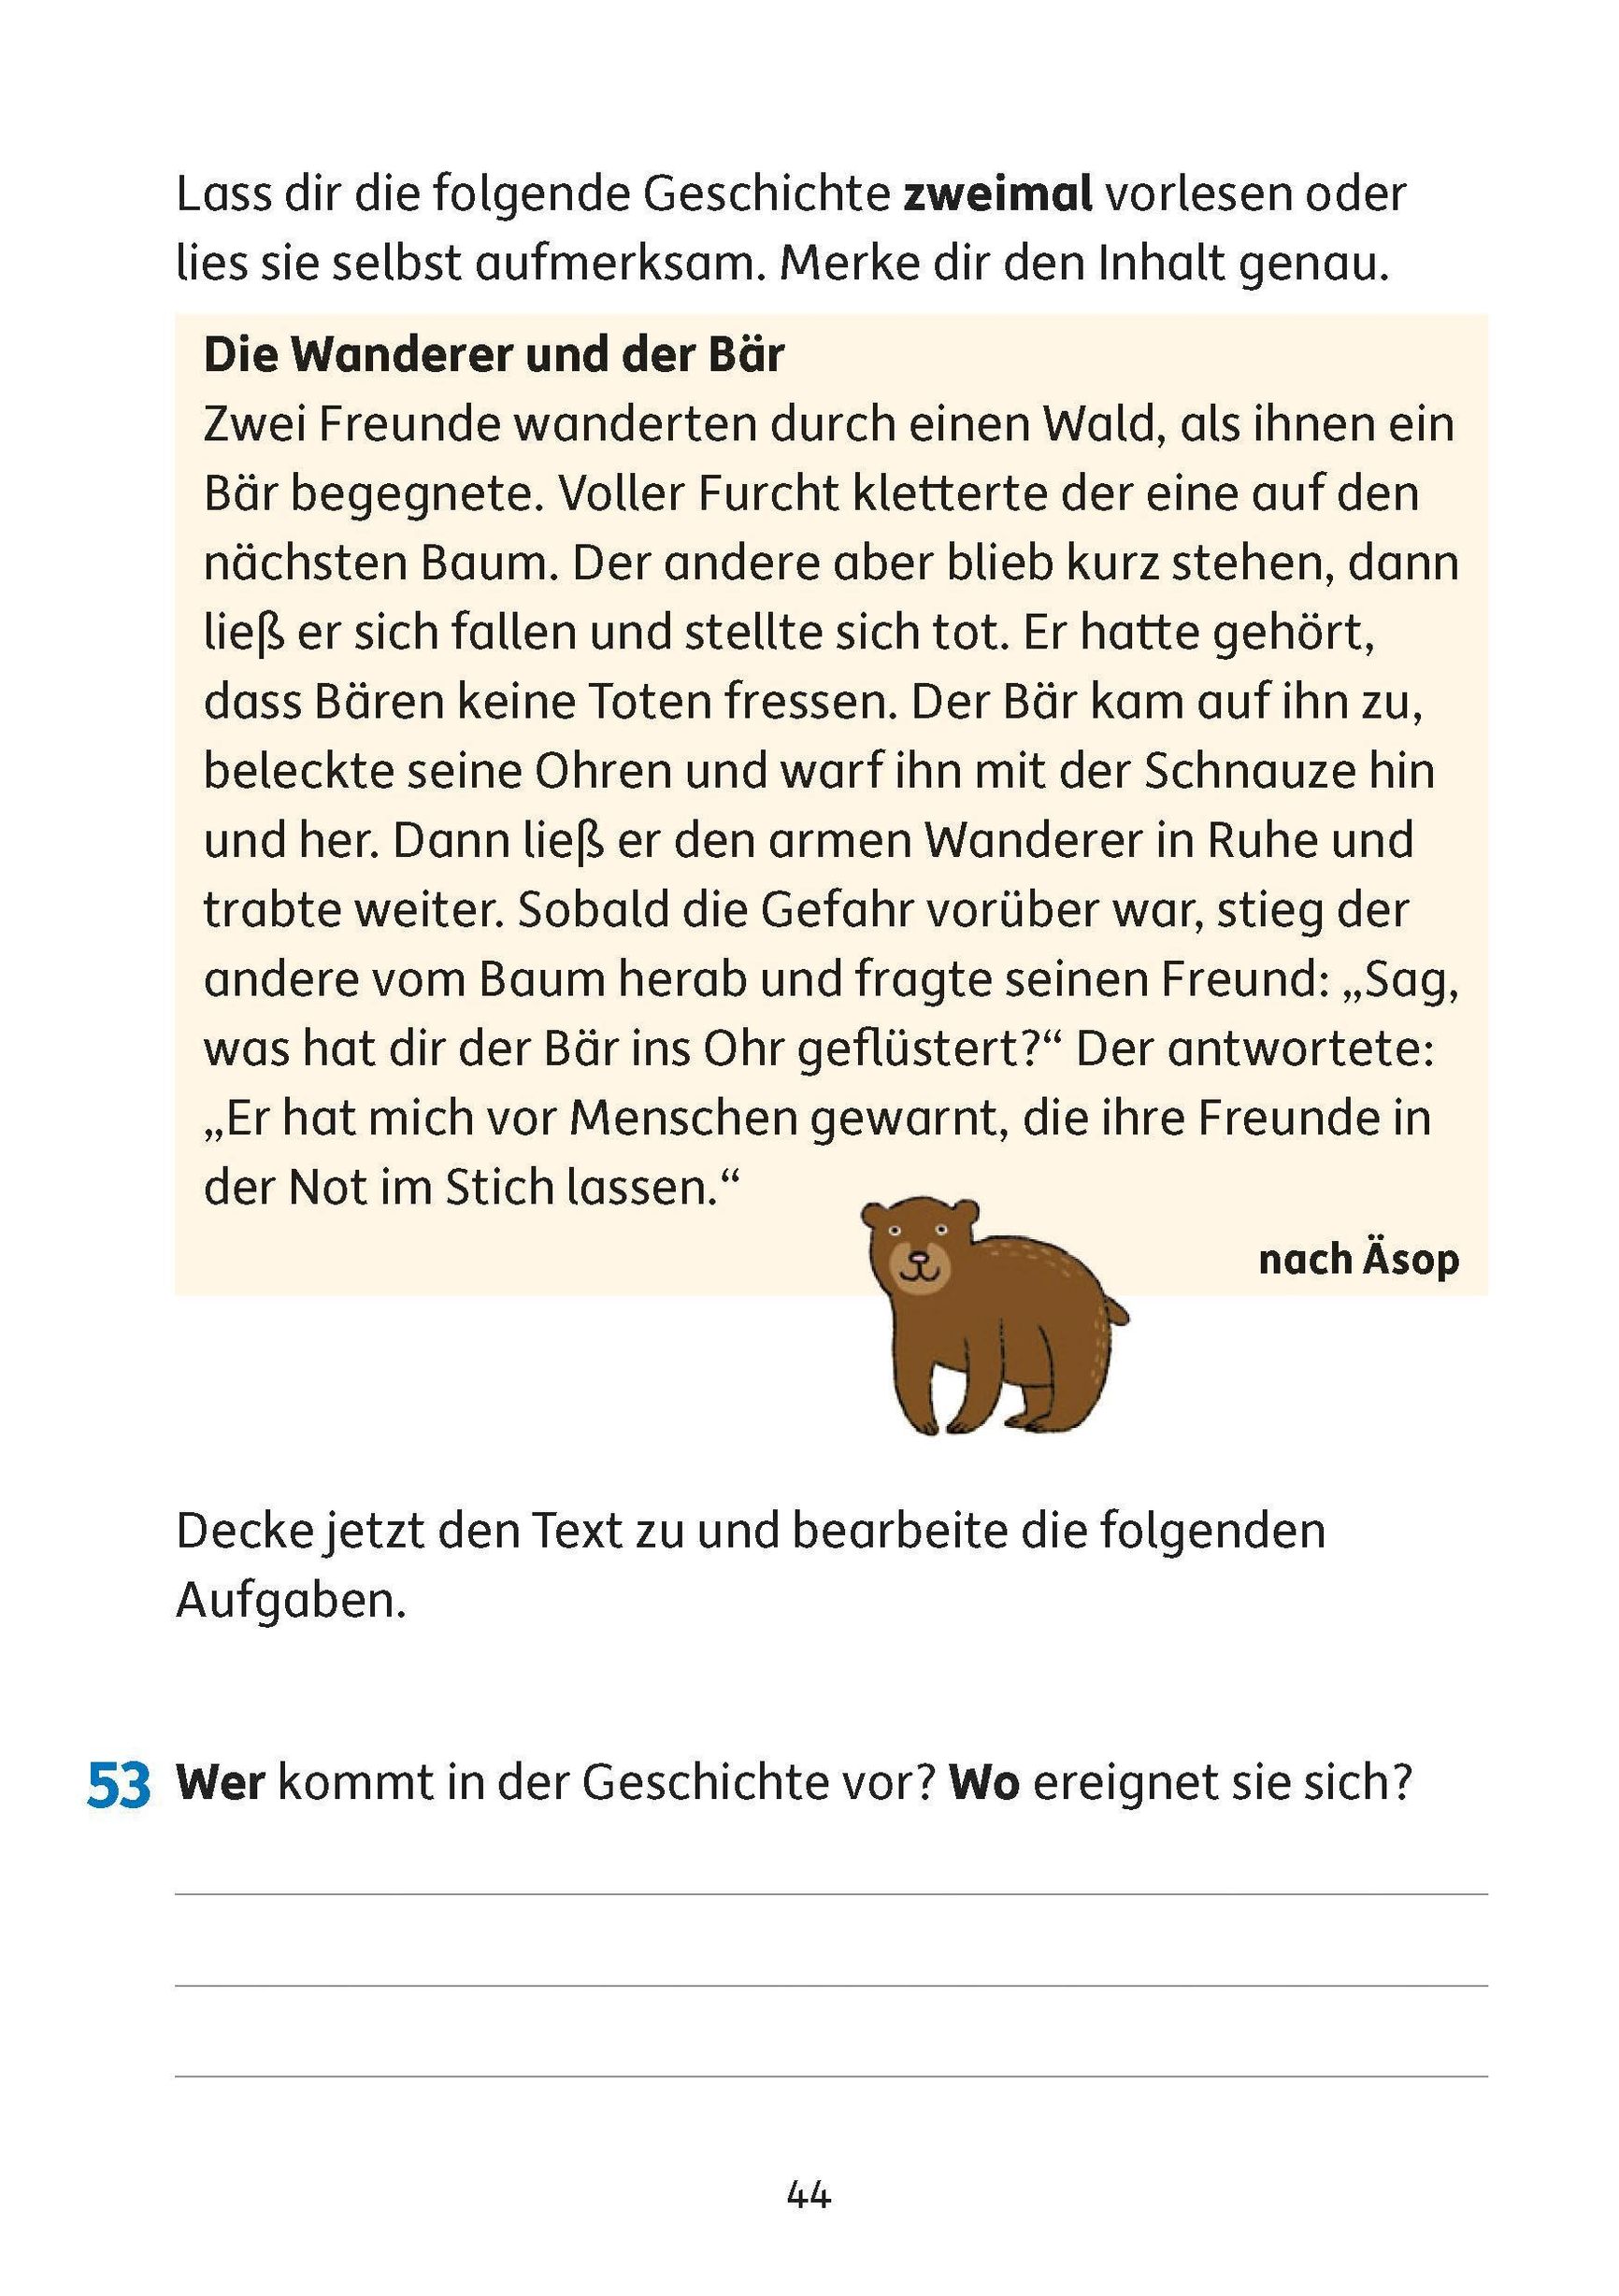 Deutsch 4. Klasse Übungsheft - Aufsatz Buch versandkostenfrei - Weltbild.at